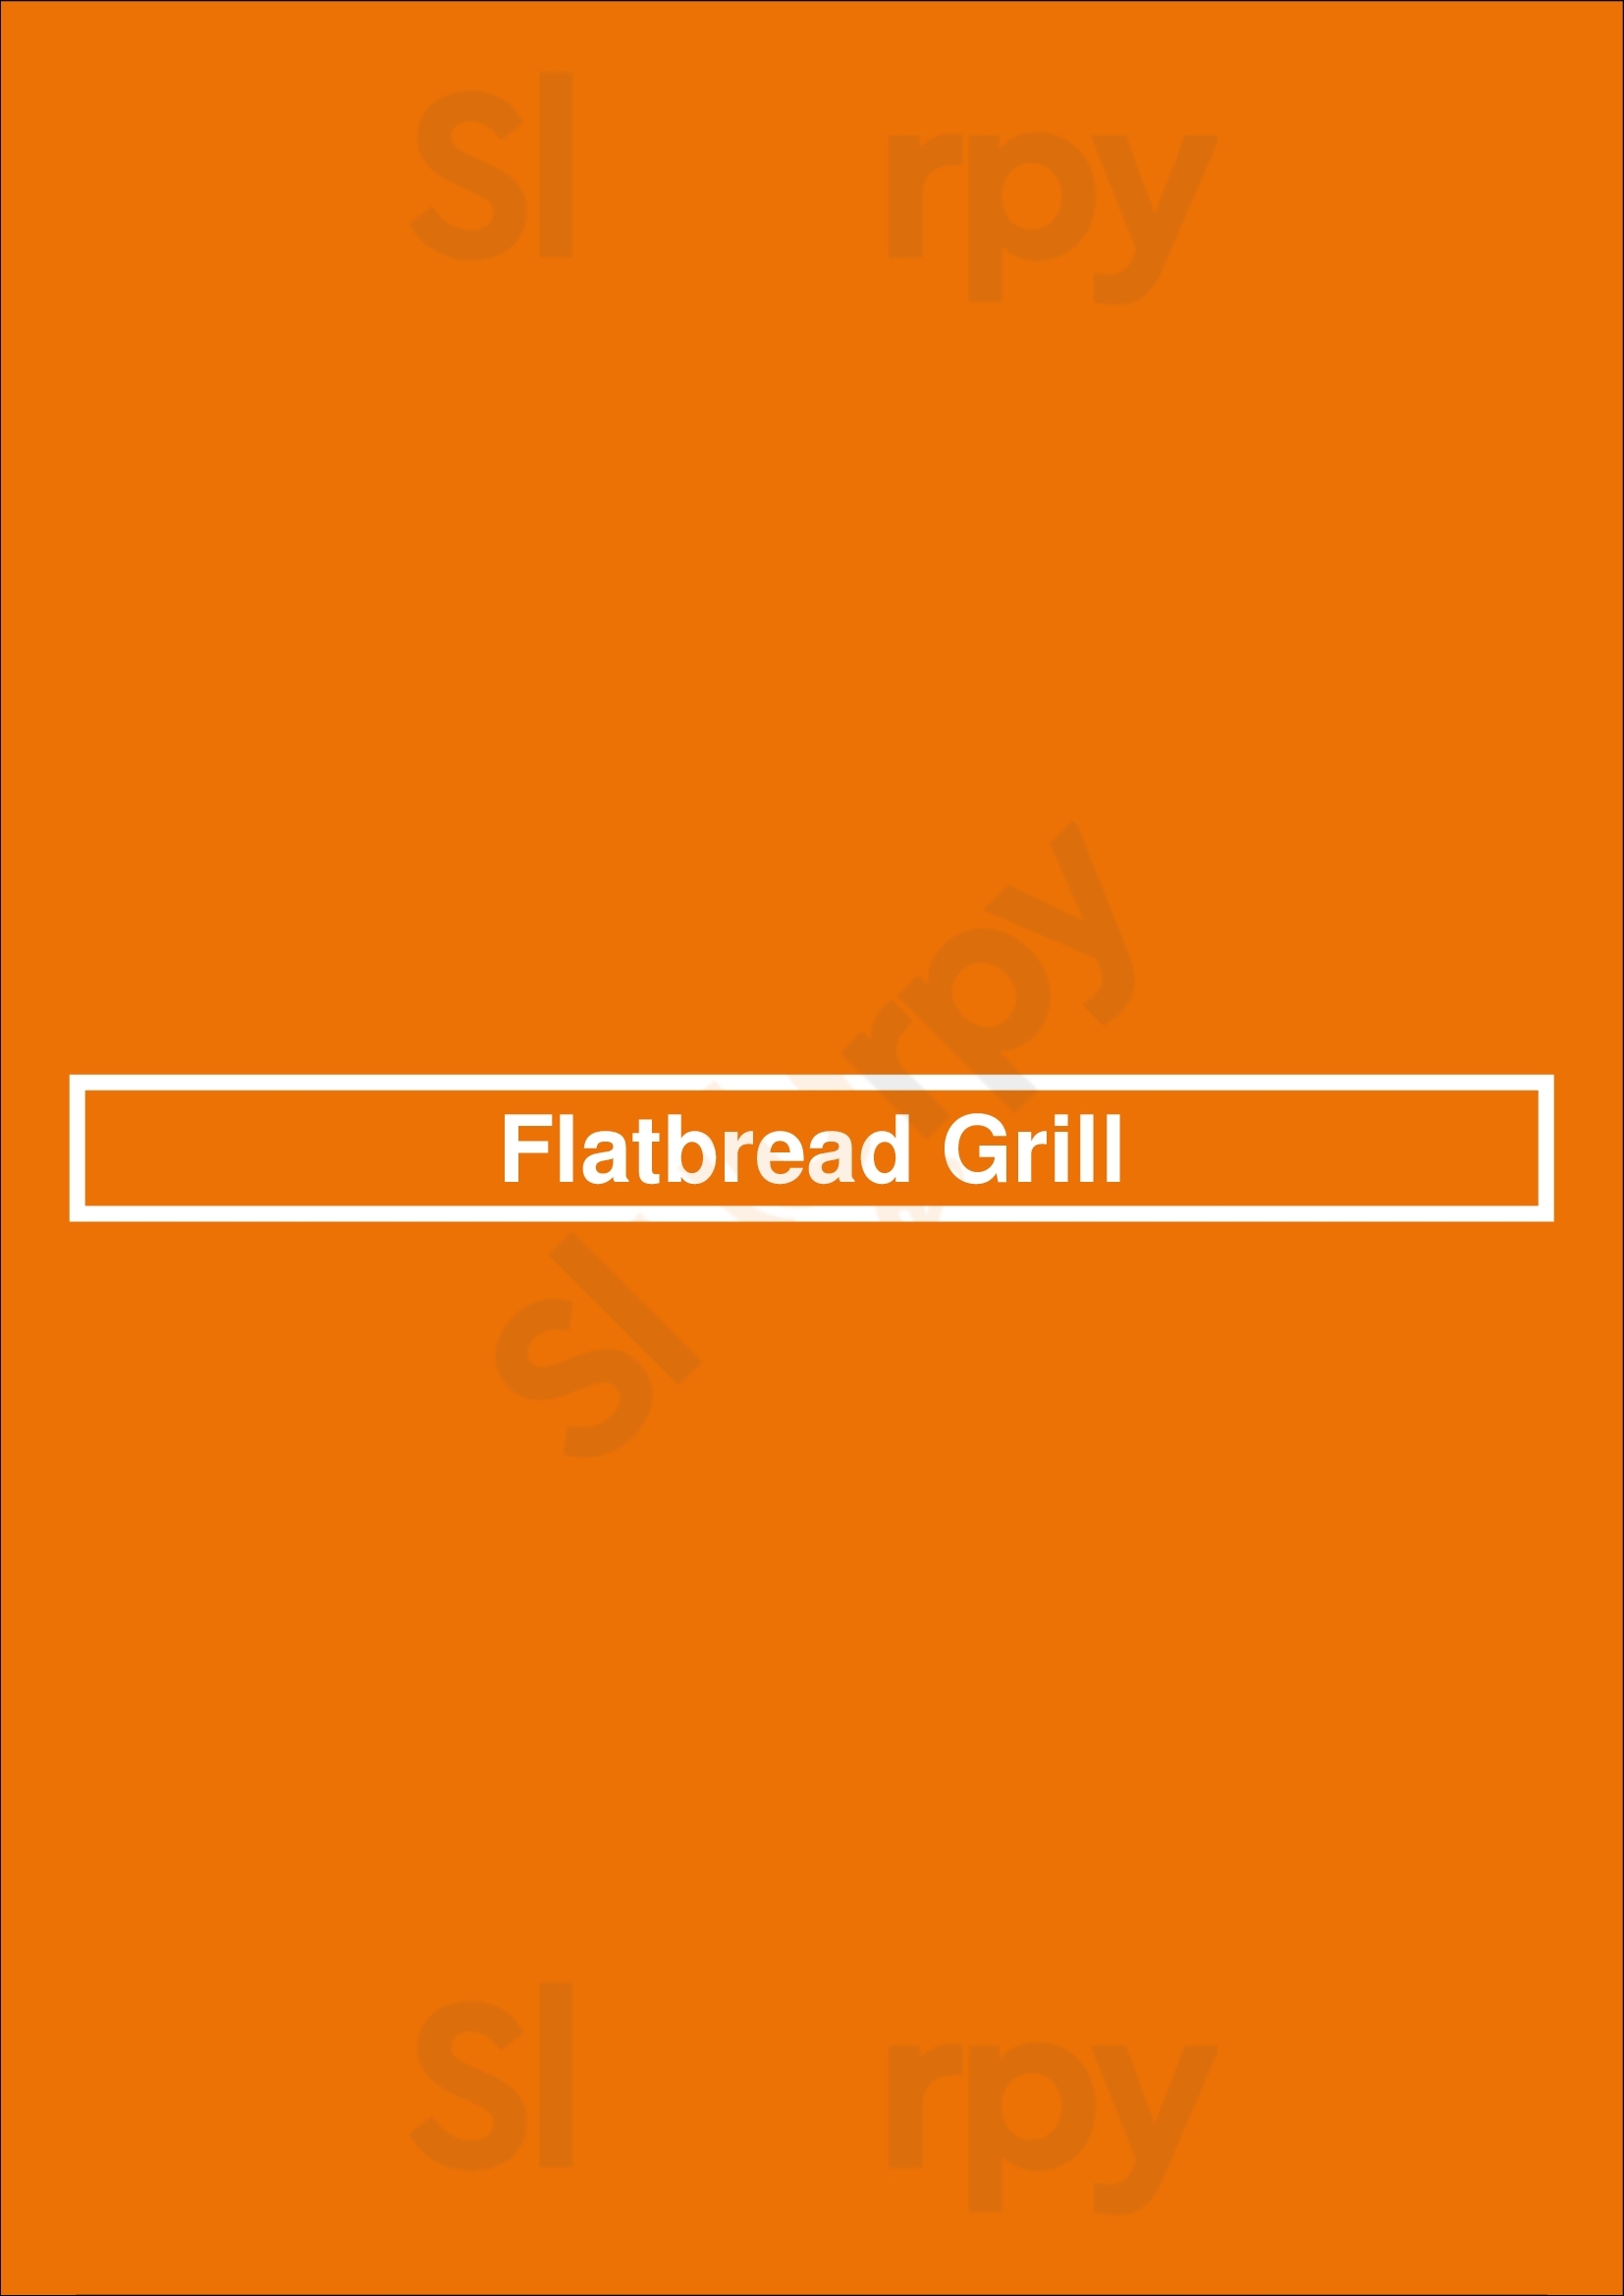 Flatbread Grill Hilton Head Menu - 1